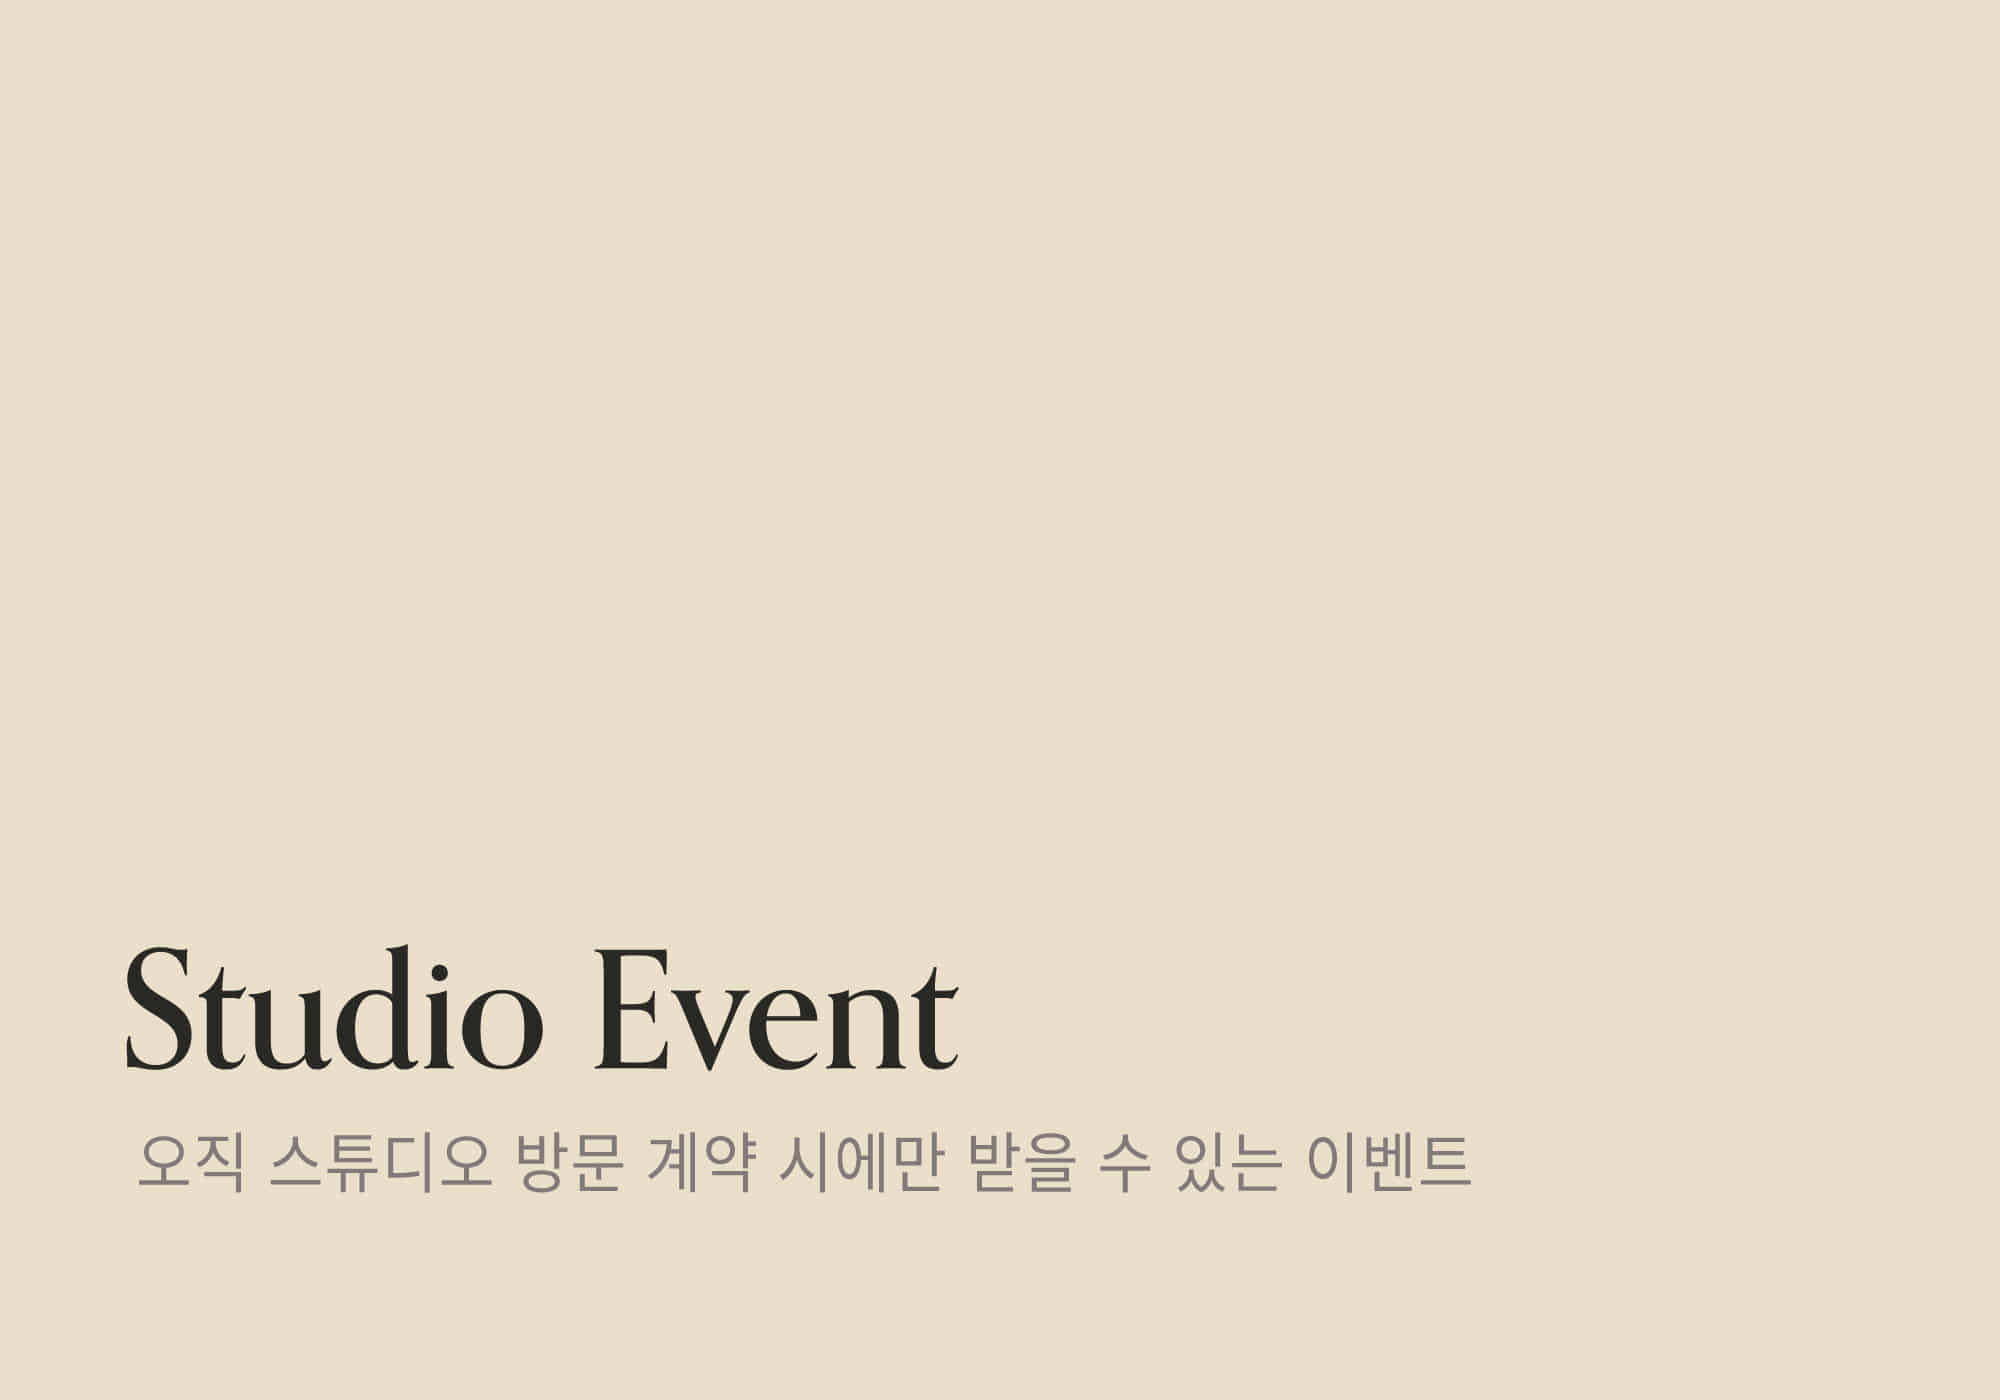 Studio events 2022.12 - 2023.1